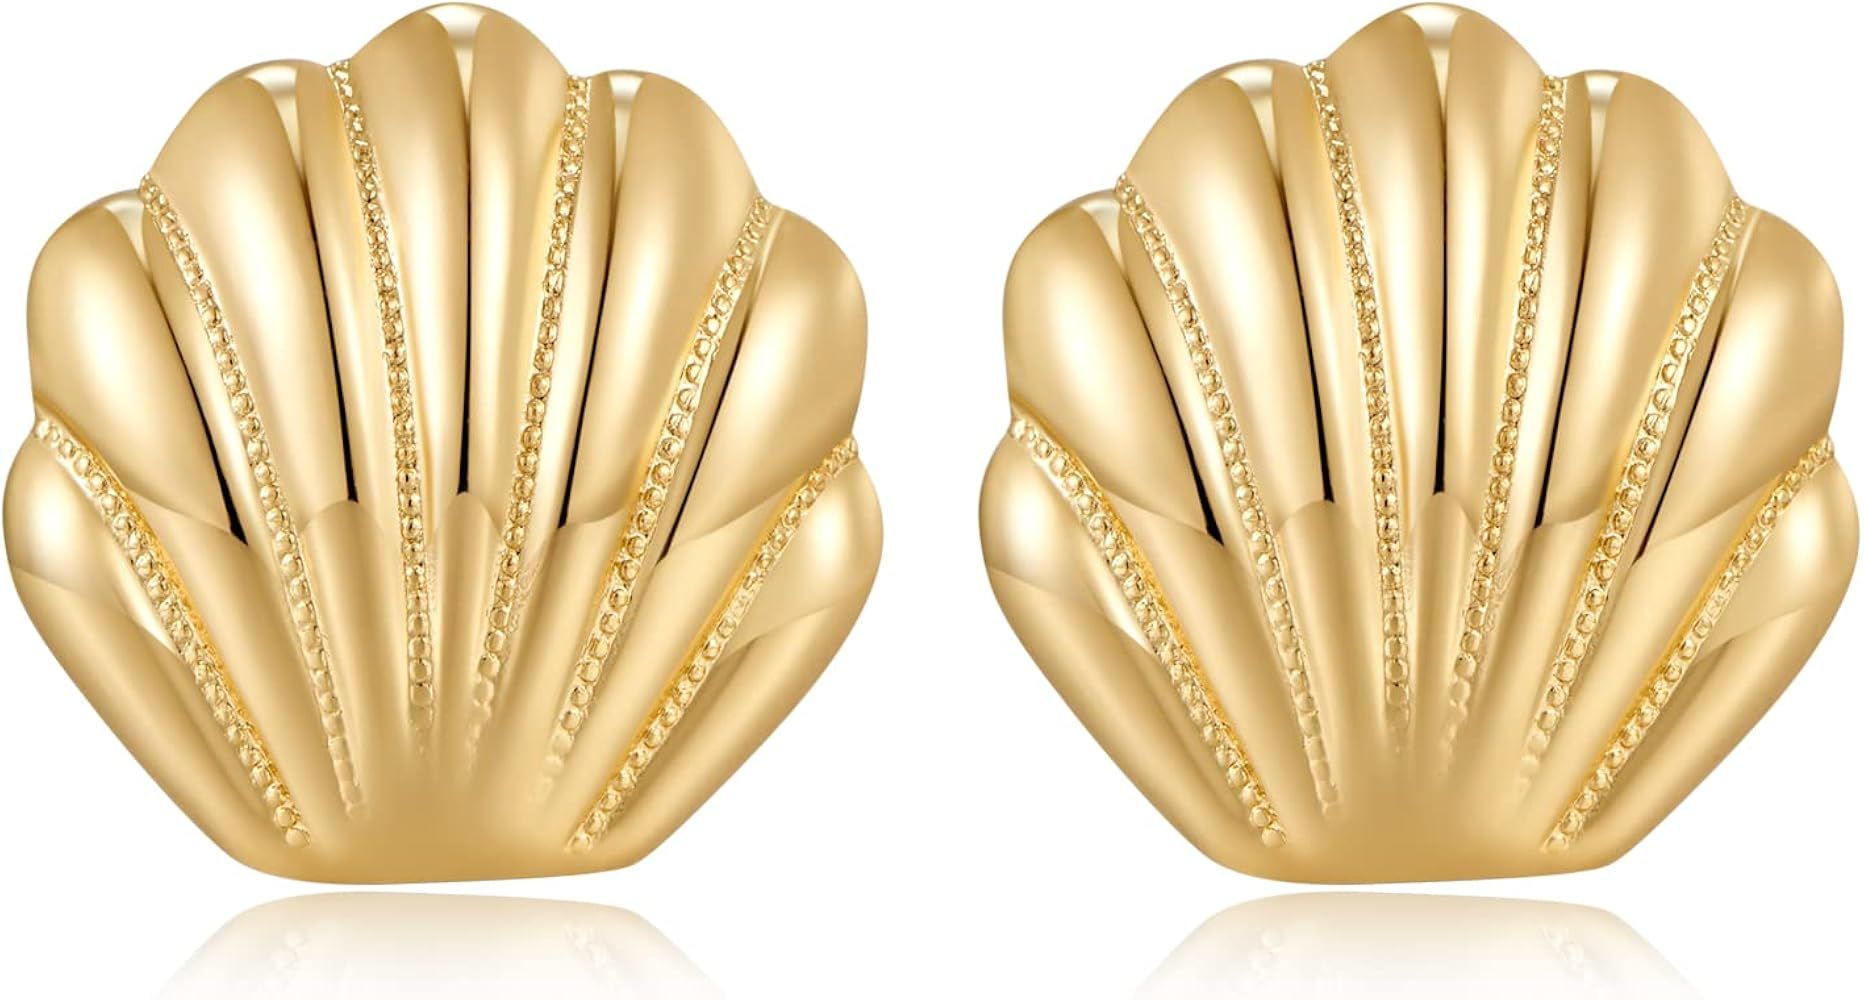 Gold Boho Ocean Earrings Shell Earrings Sea Shell Stud Earrings Beach Jewelry Gifts for Women | Amazon (US)